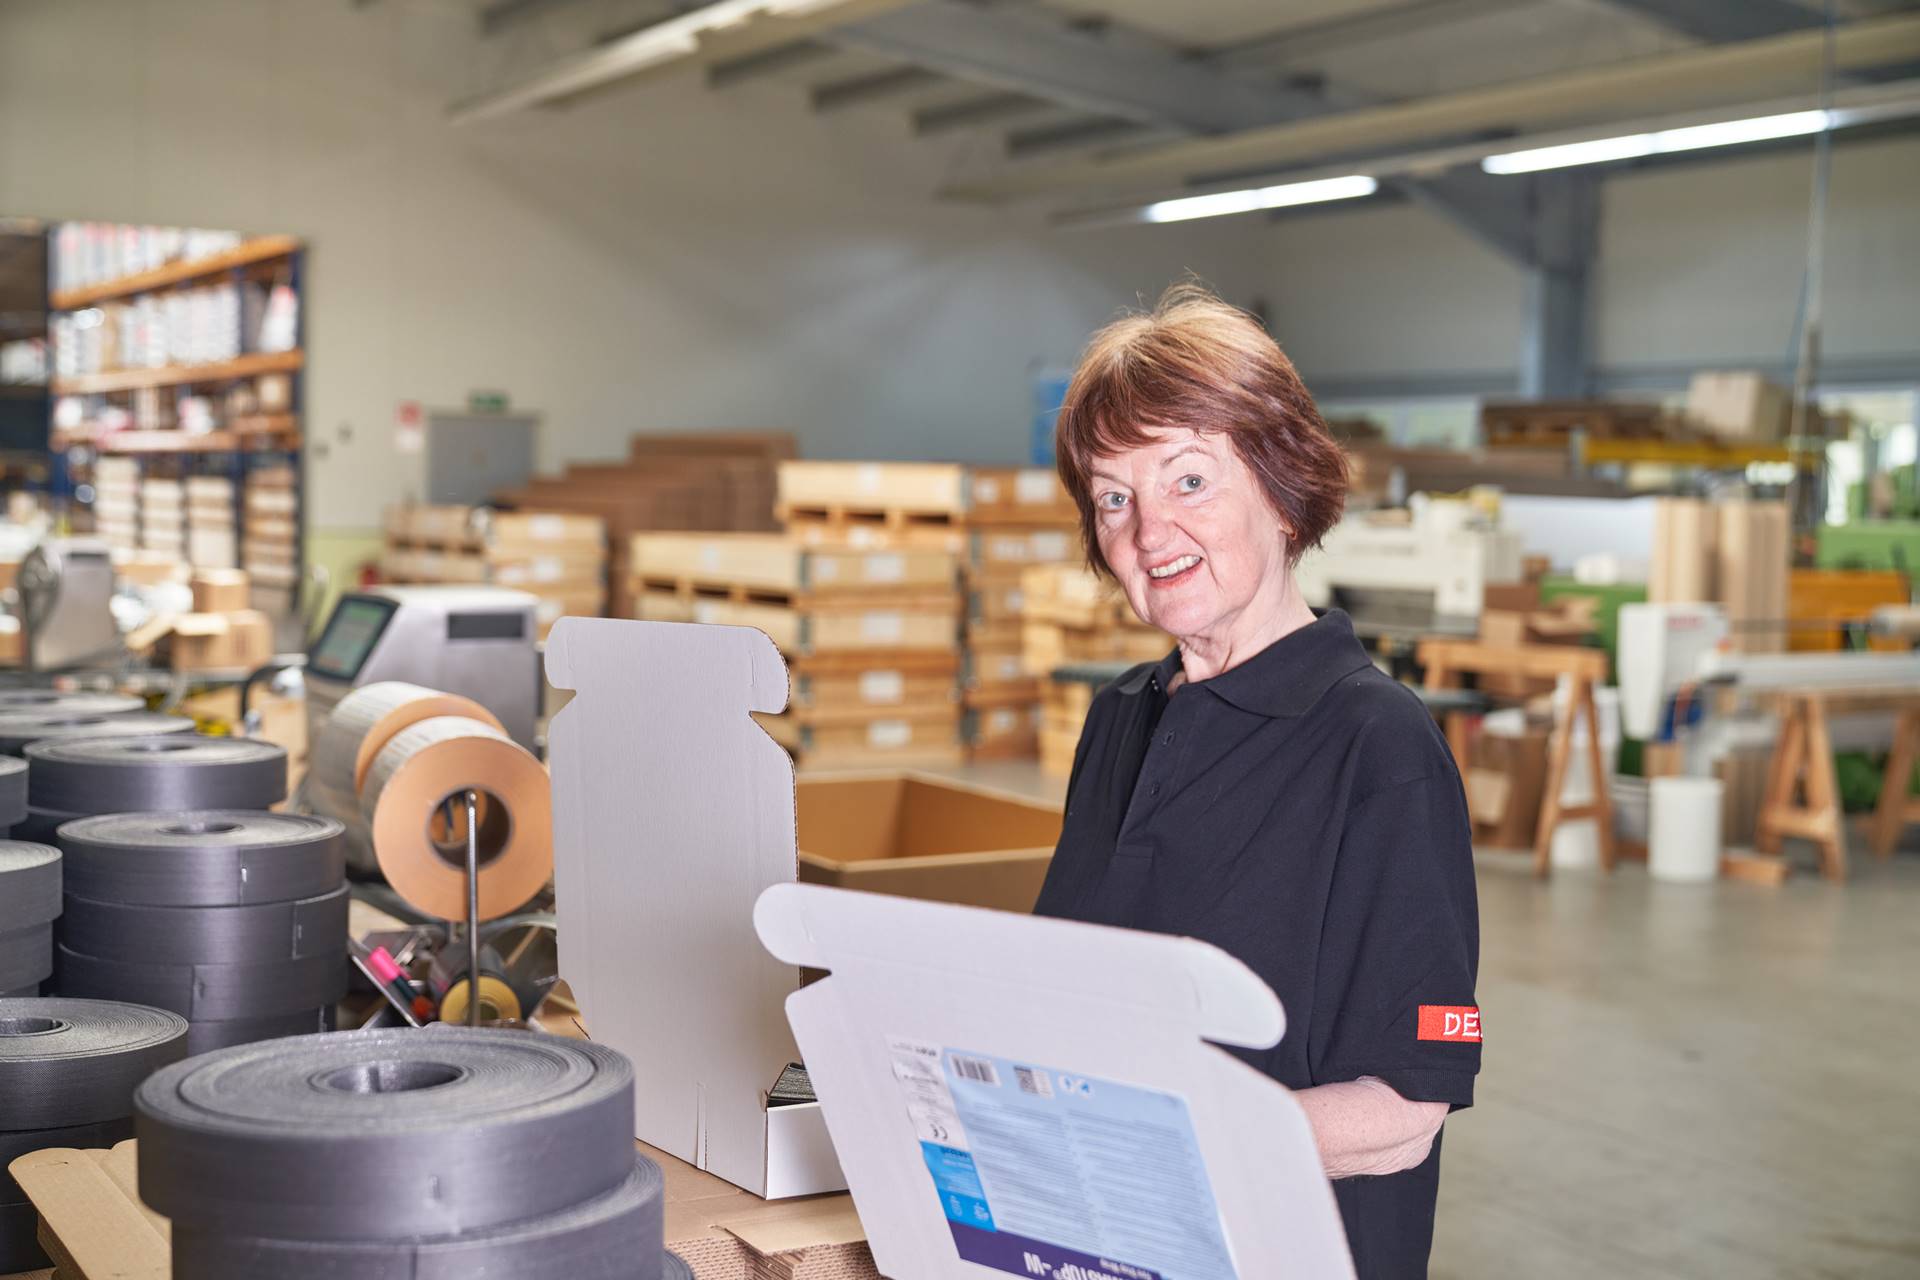 DEBA Produktions- u. Dienstleistungs GmbH aus Wallern in Oberösterreich